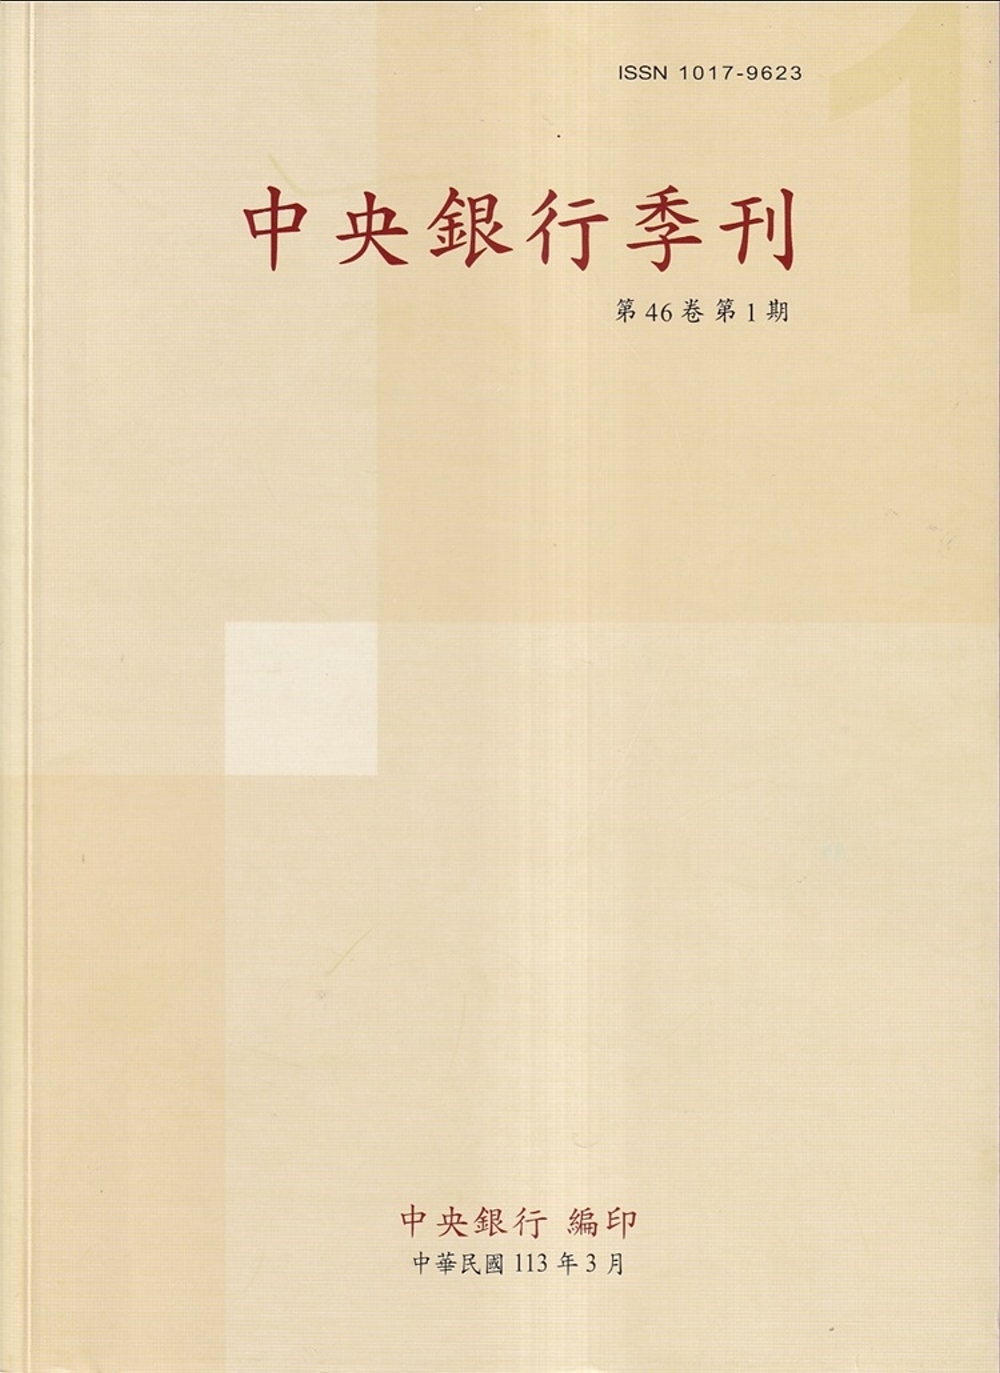 中央銀行季刊46卷1期(113.03)